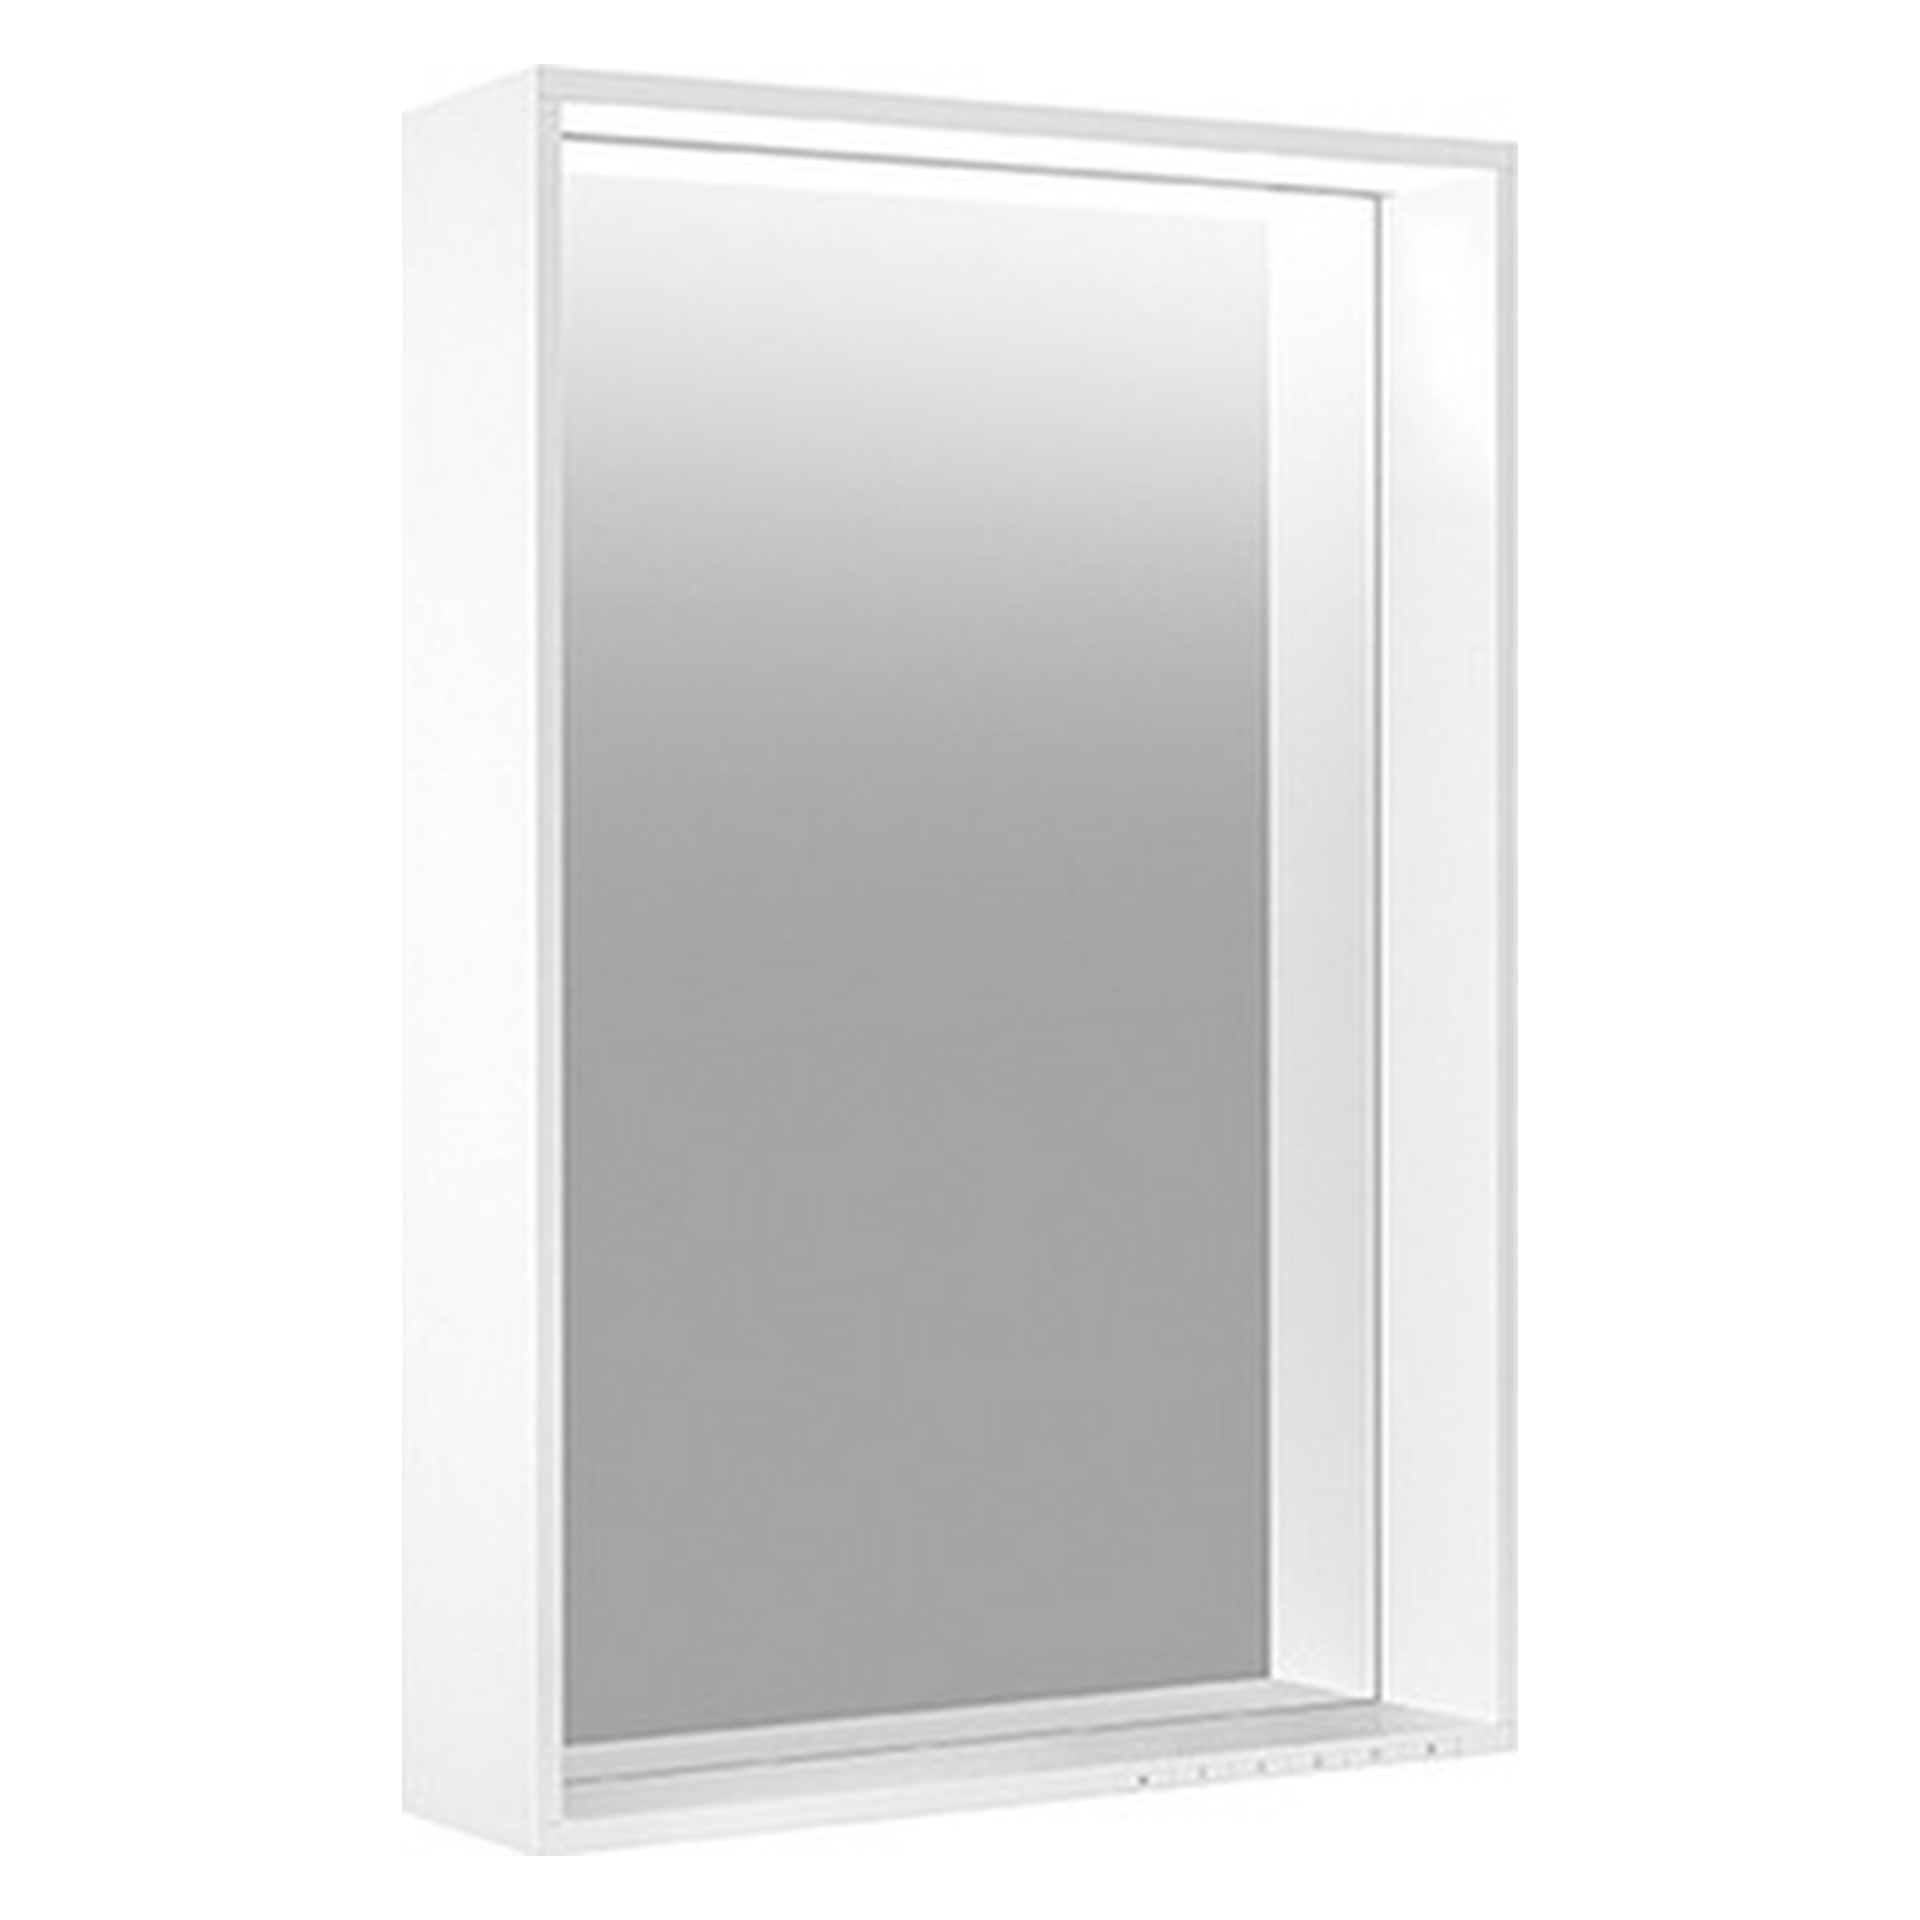 Lichtspiegel 07898172000 Lichtspiegel Plan mit Spiegelheizung 650 × 700 × 105 mm silber-eloxiert